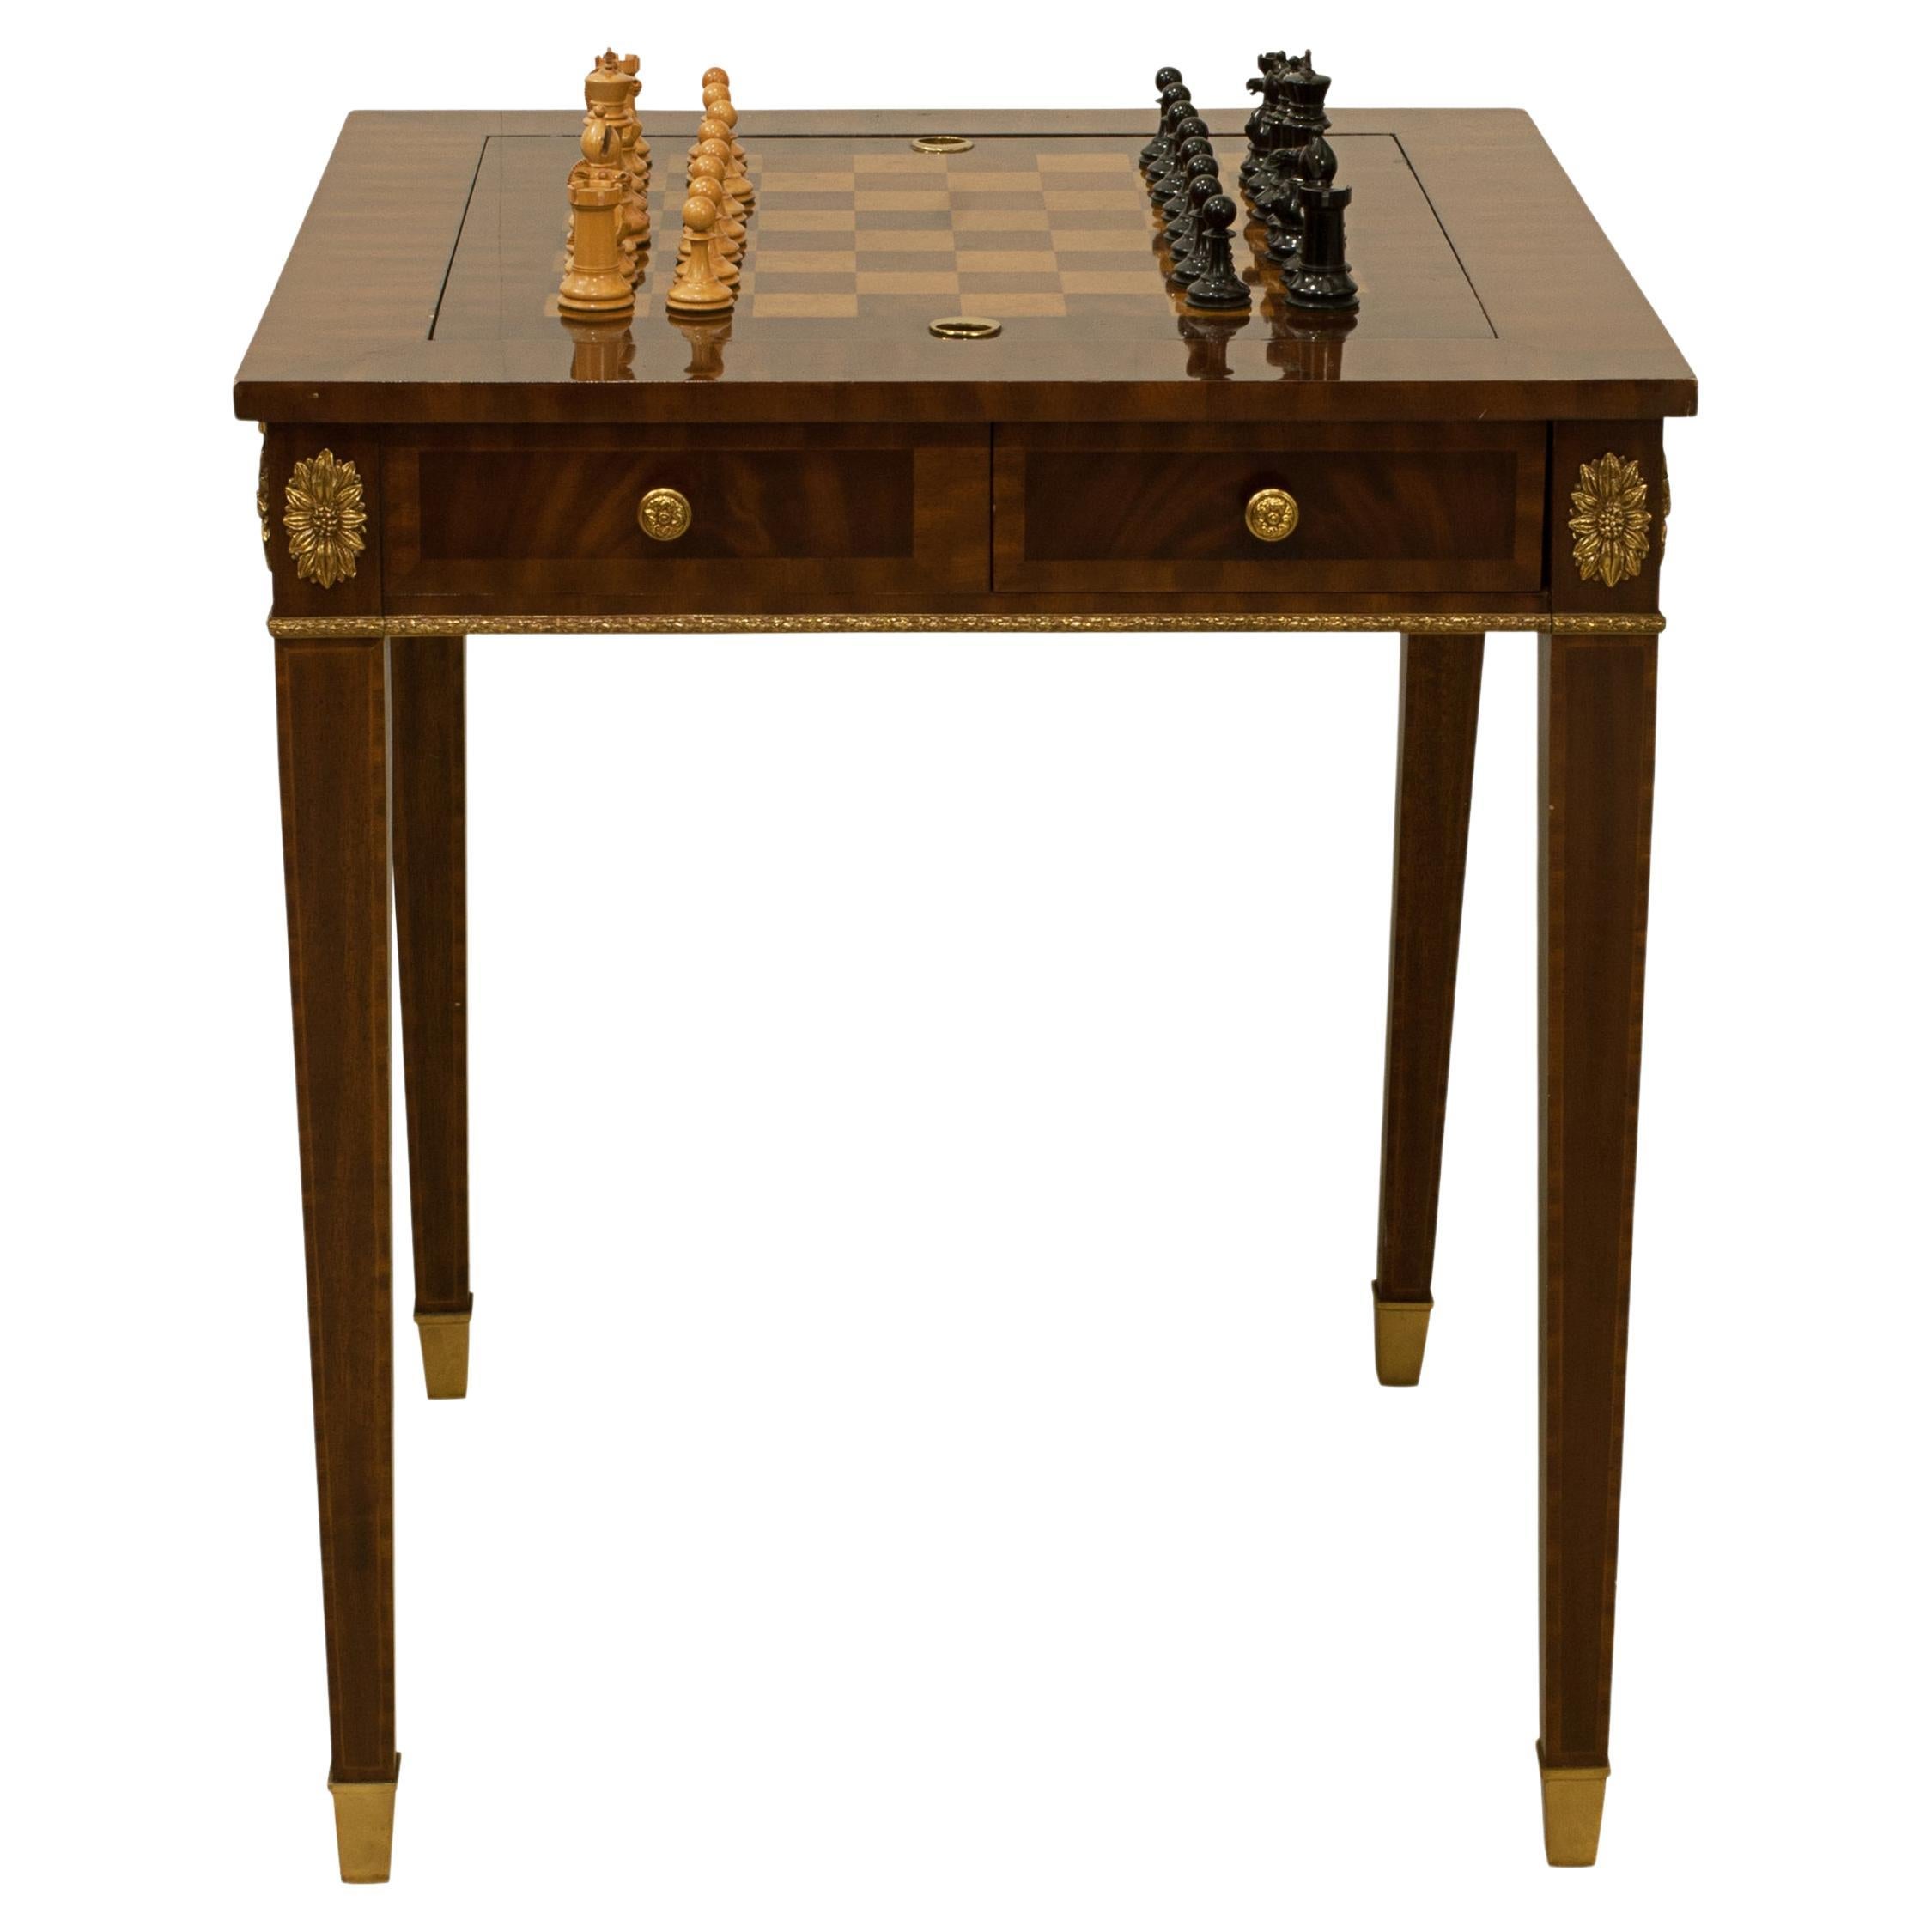 Table de jeu d'échecs et de backgammon